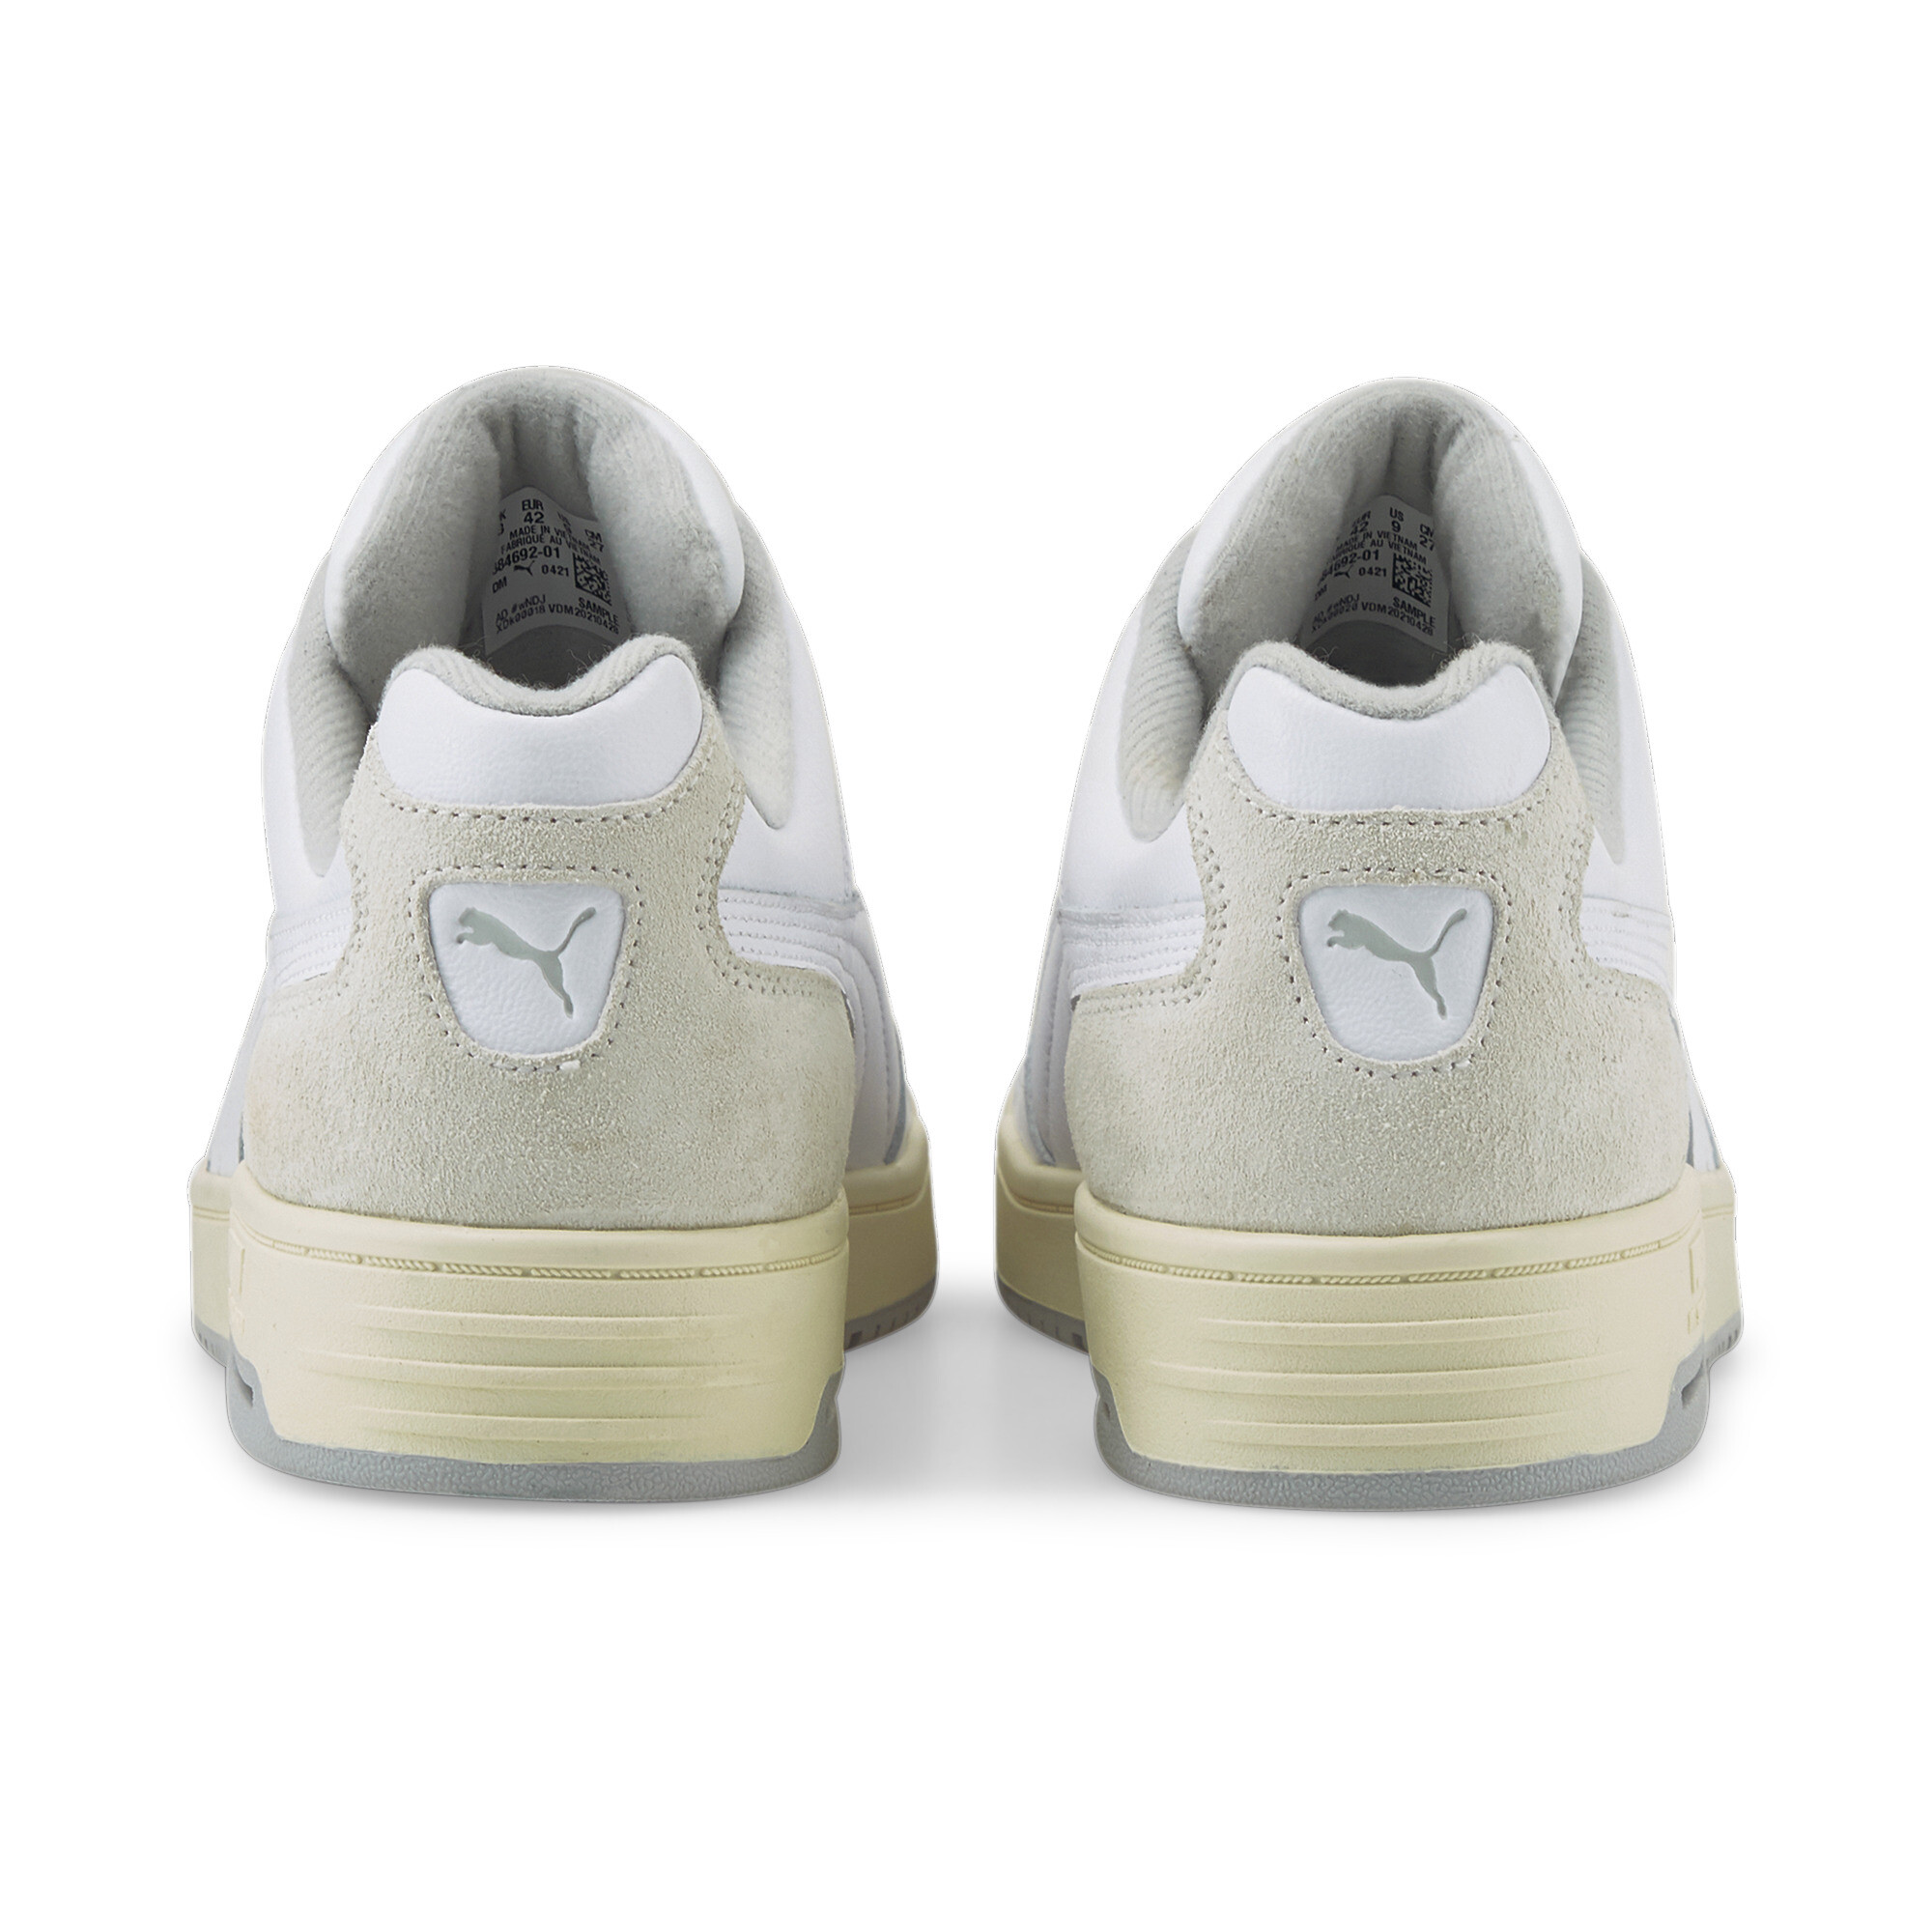 Puma Slipstream Lo Retro Trainers, White, Size 46, Shoes